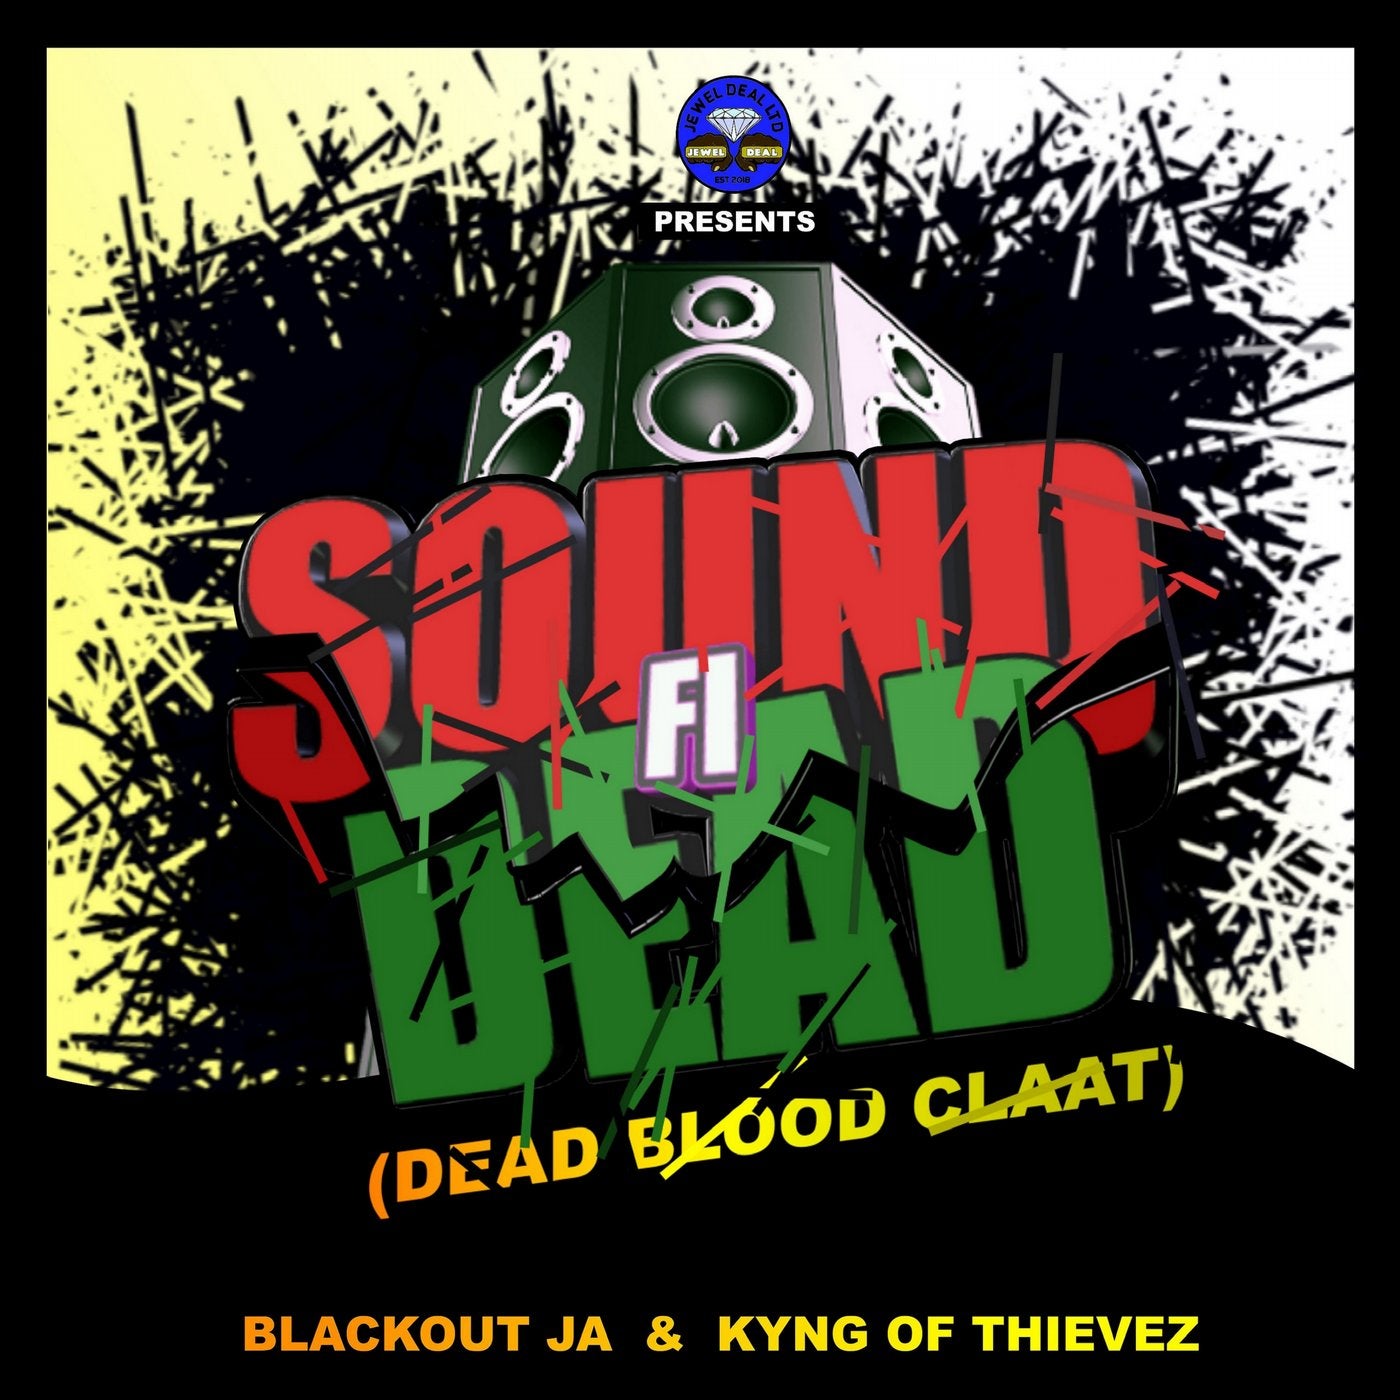 Sound Fi Dead (Dead Blood Claat)